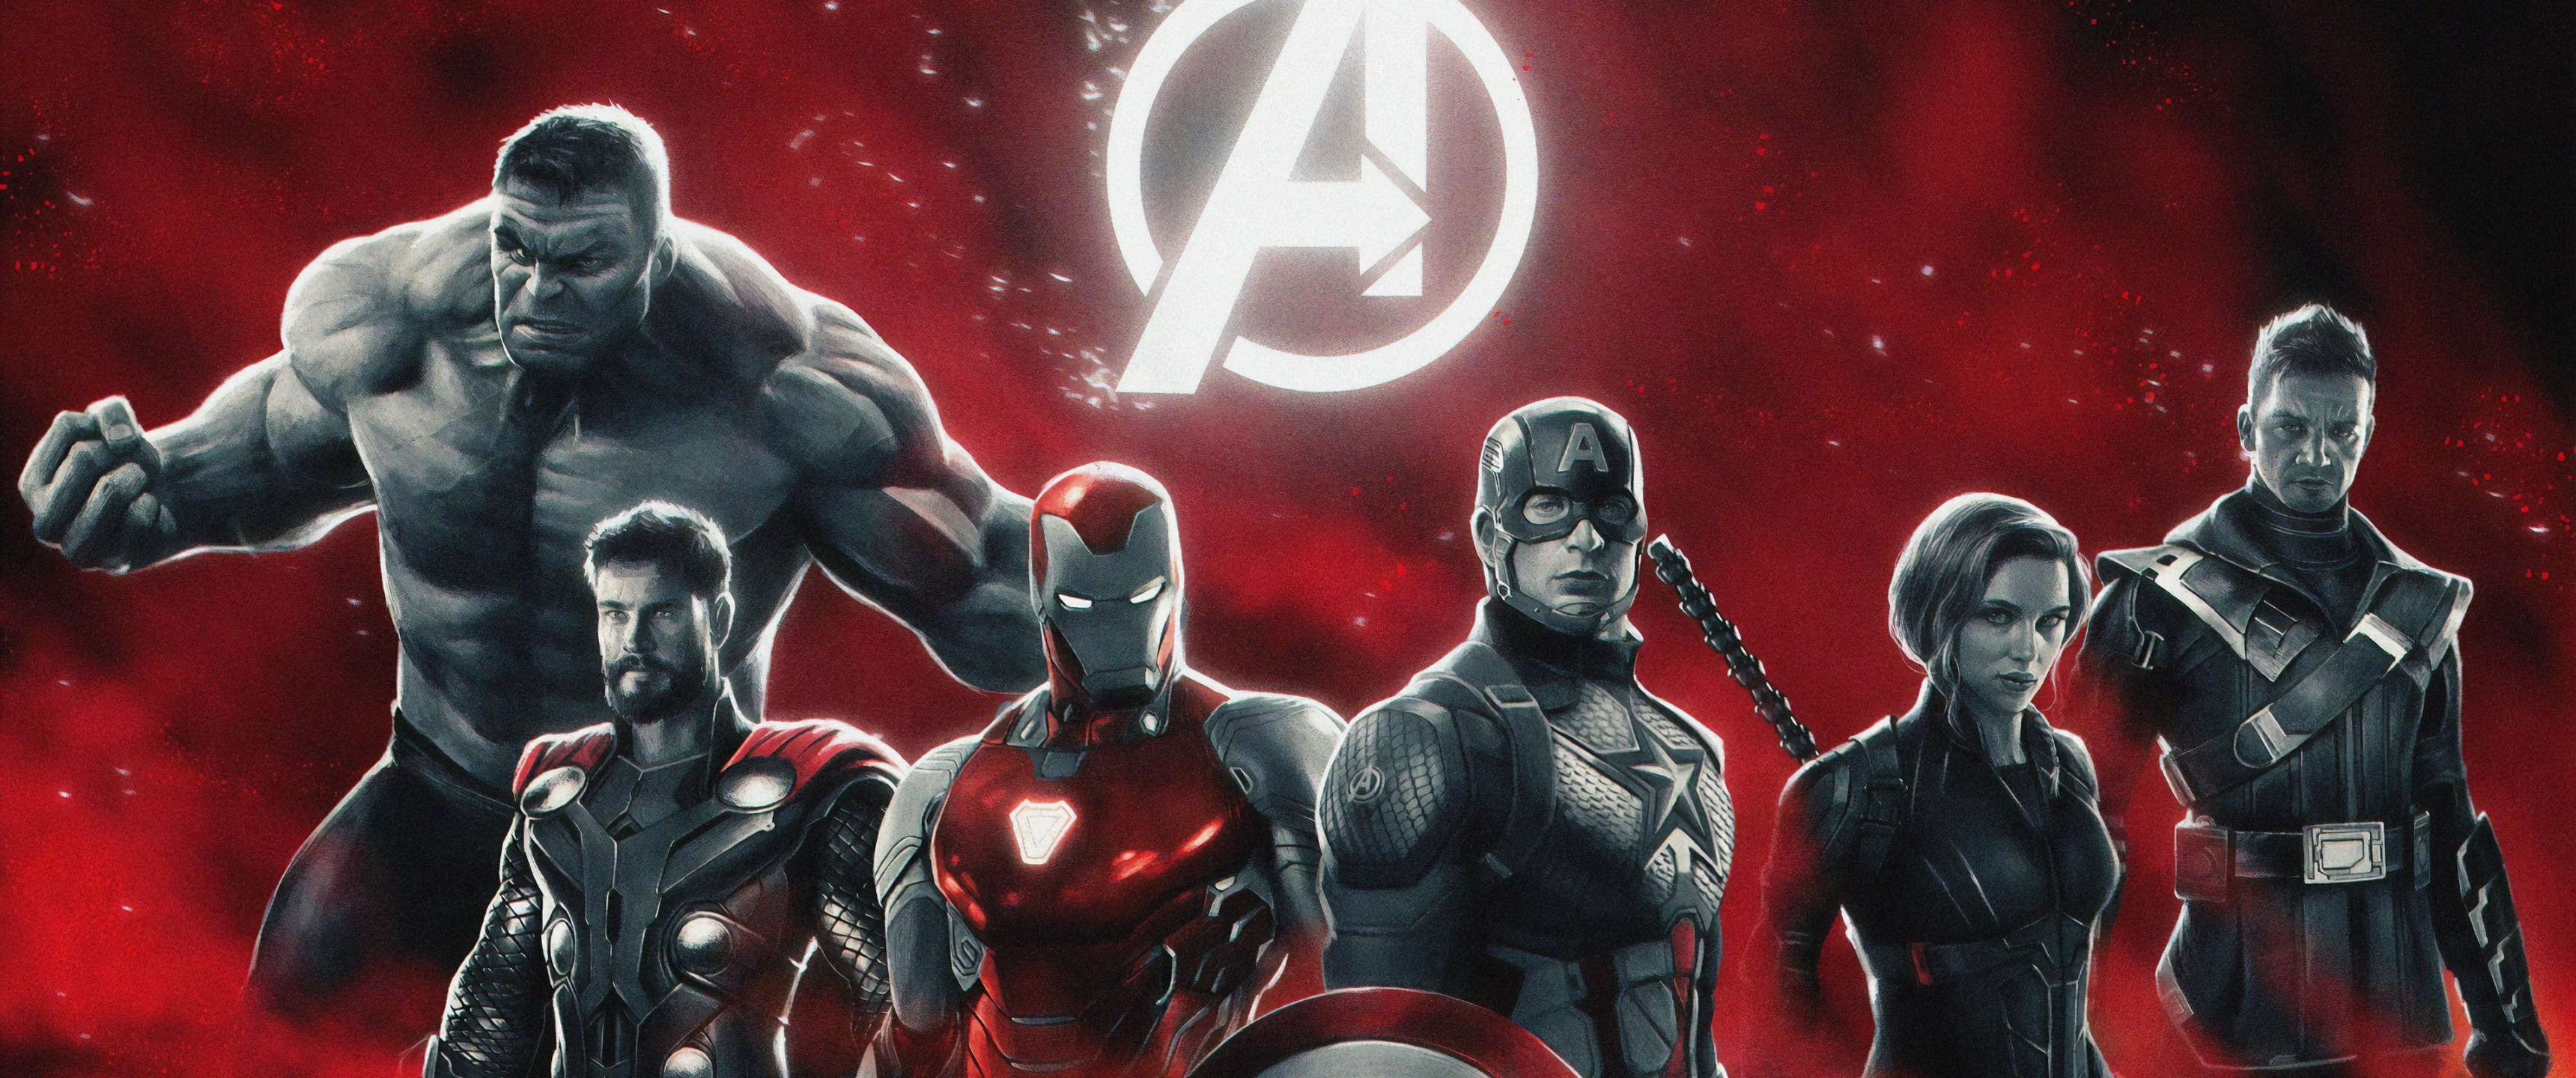 Avengers: Không thể bỏ qua những siêu anh hùng của Avengers! Trải nghiệm những cuộc đấu đầy kịch tính giữa những nhân vật như Iron Man, Captain American và Thor. Hãy chuẩn bị cho một cuộc phiêu lưu cùng Avengers và chiến đấu chống lại những kẻ thù của chúng.